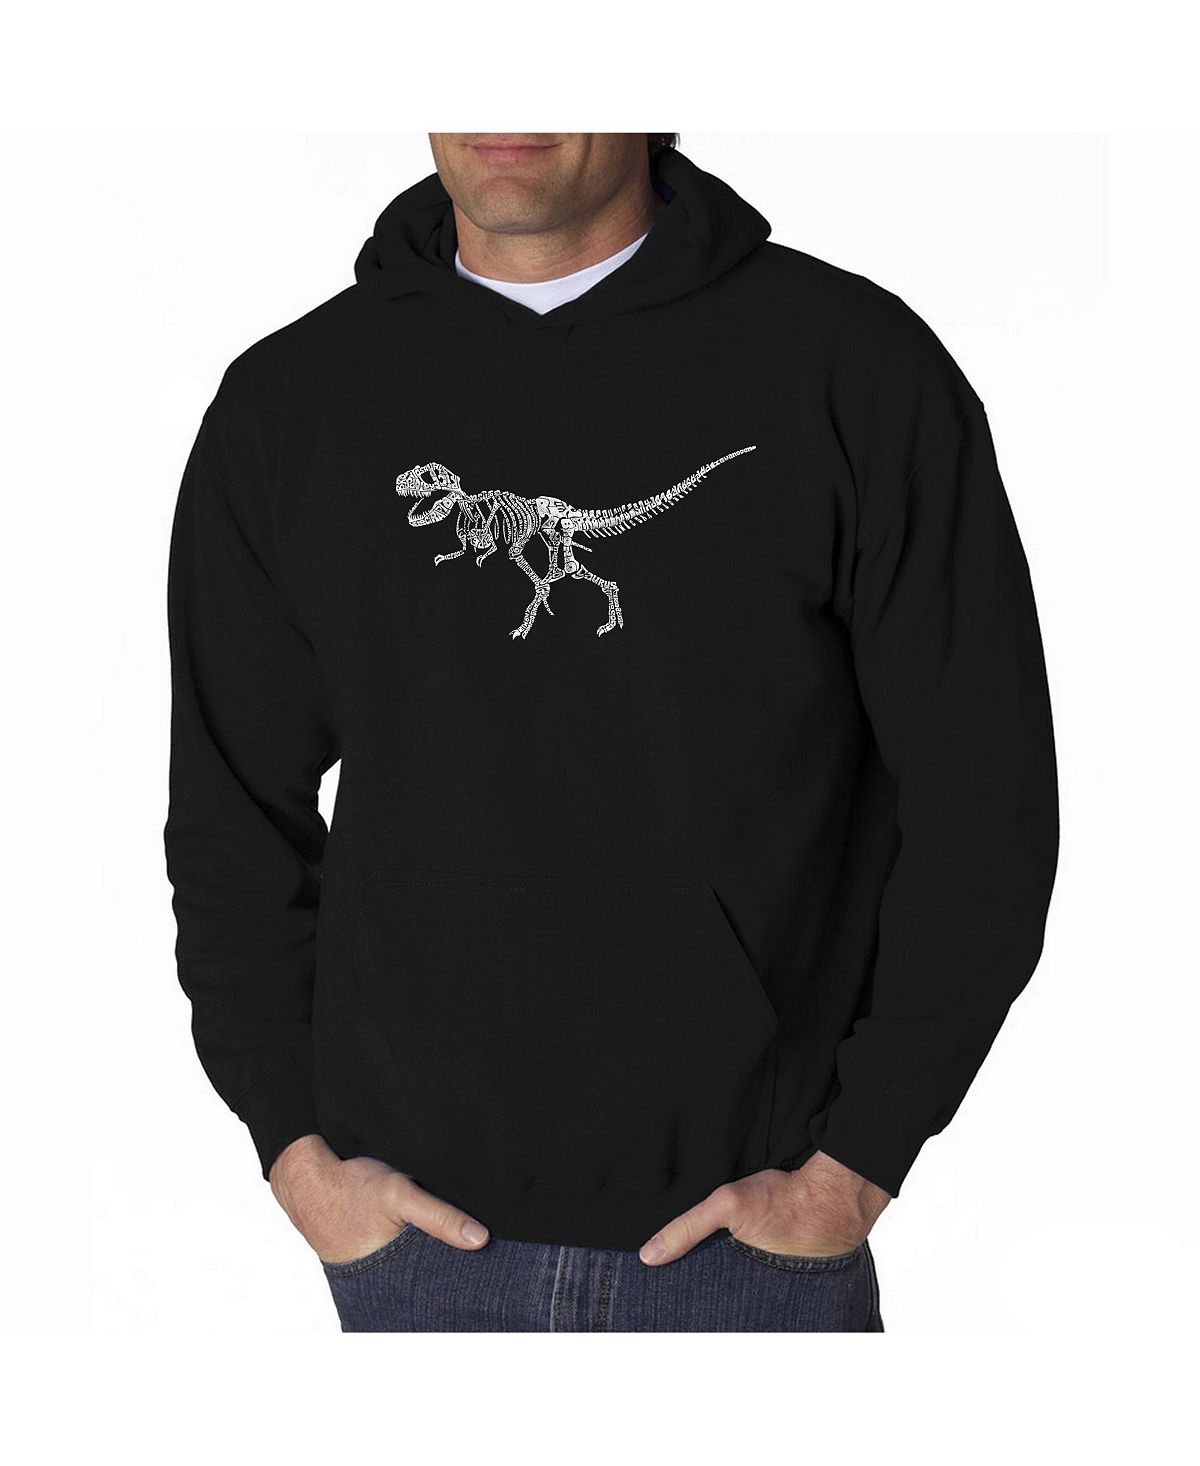 Мужская толстовка с капюшоном word art - скелет динозавра t-rex LA Pop Art, черный